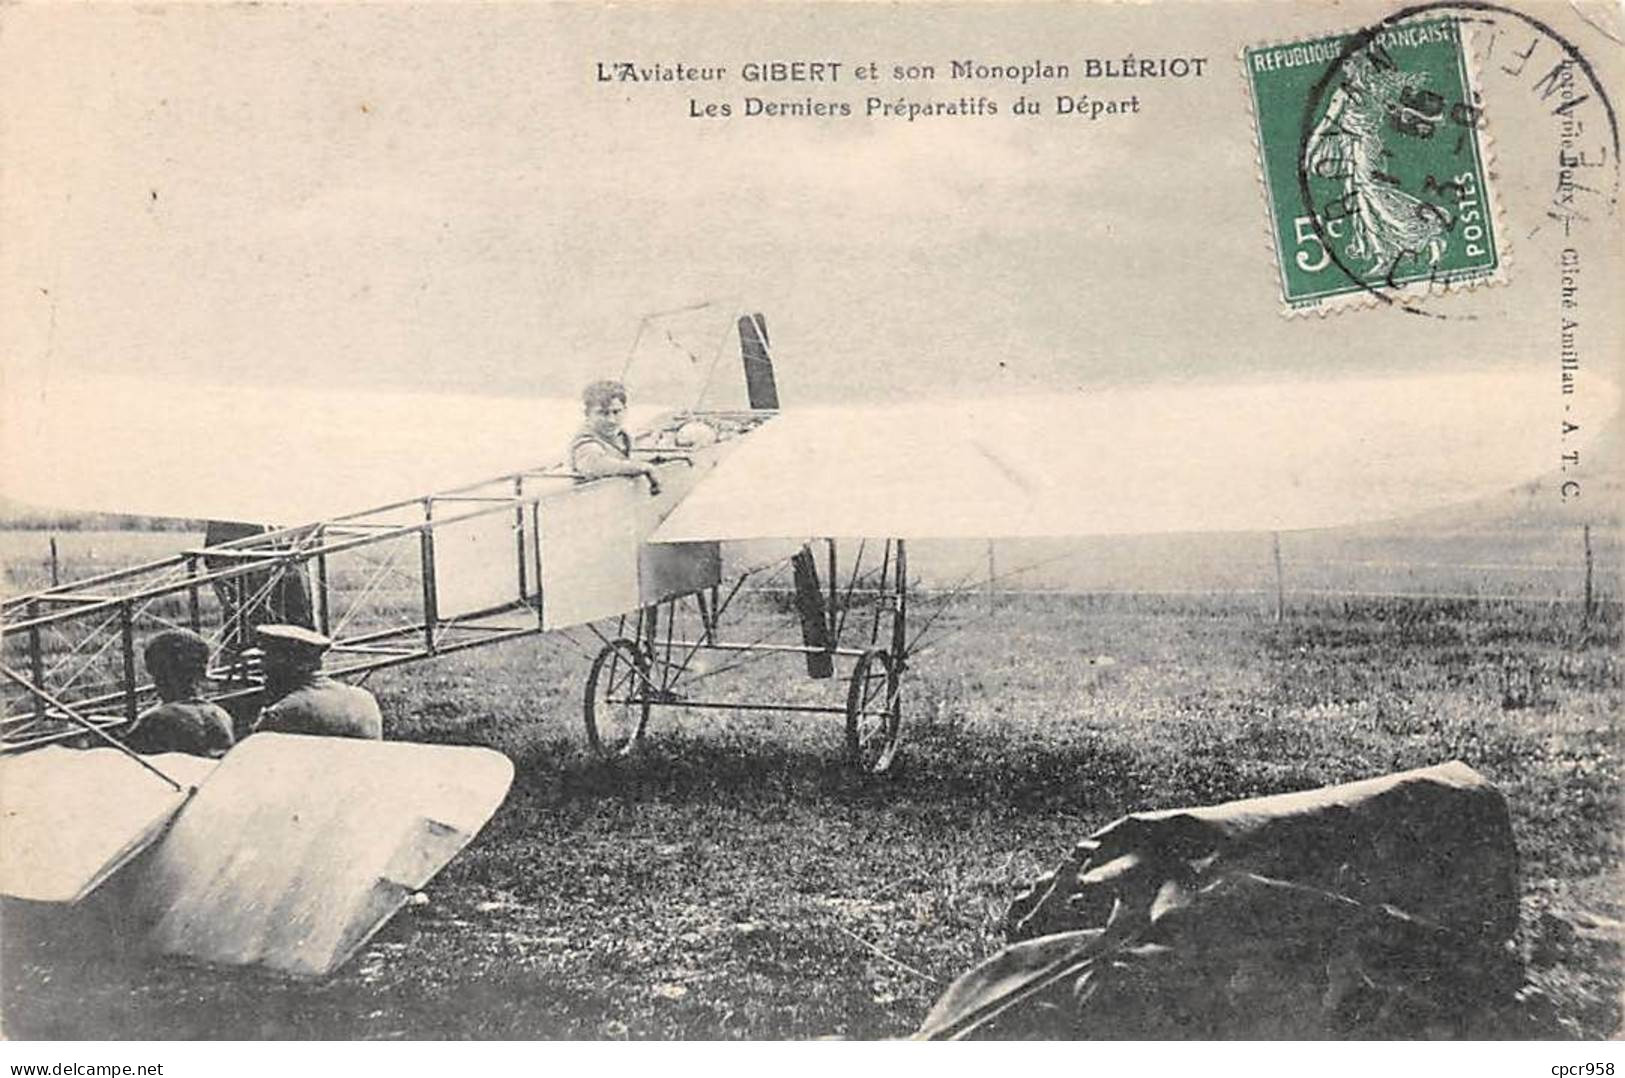 AVIATION - SAN50977 - L'Aviateur Gibert Et Son Monoplan Blériot - Les Derniers Préparatifs Du Départ - Airmen, Fliers